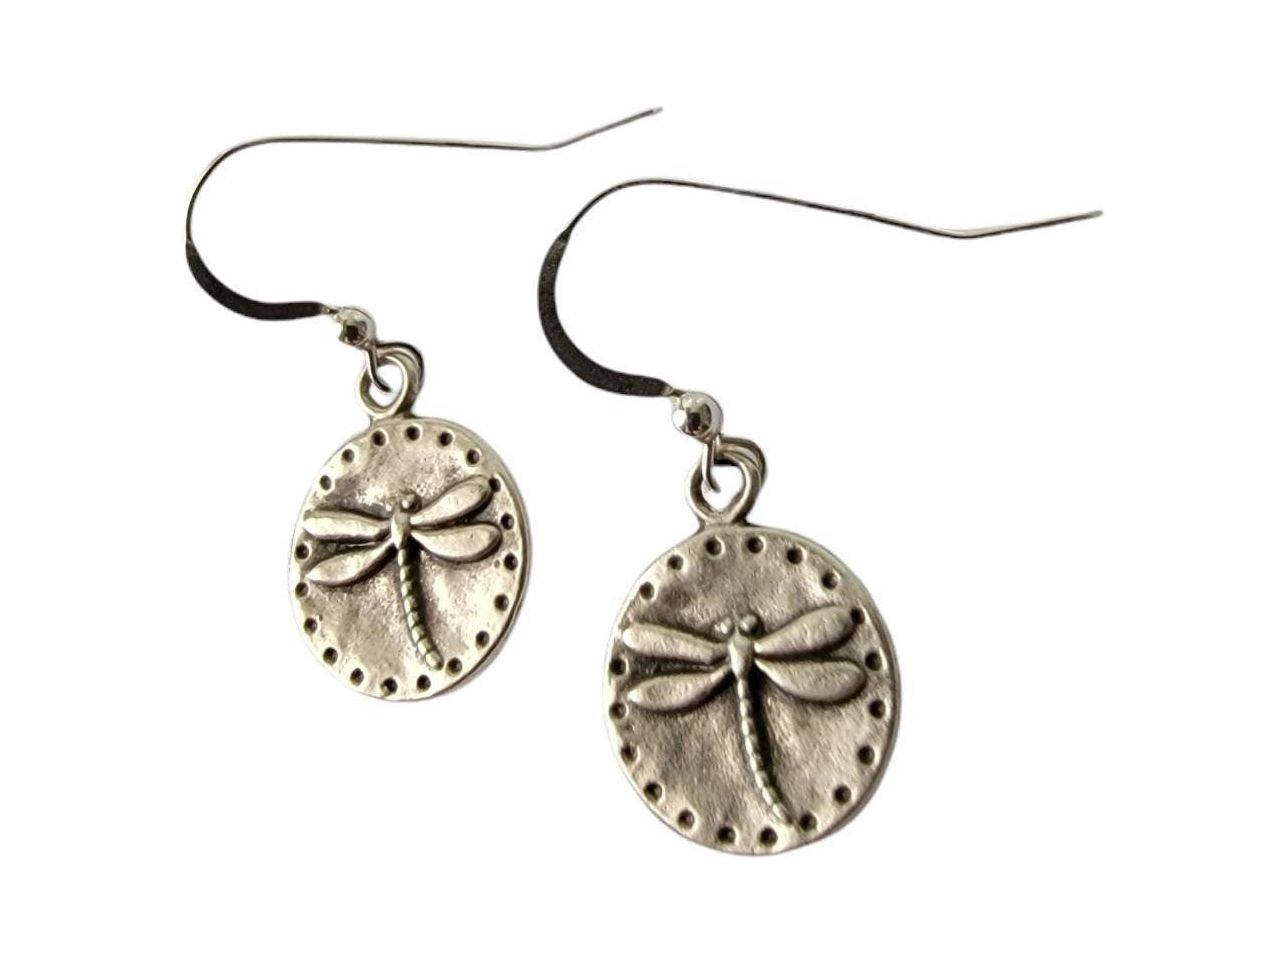 Dragonfly earrings, Minimalist Small Dragon fly earrings. Sterling Silver petite earring